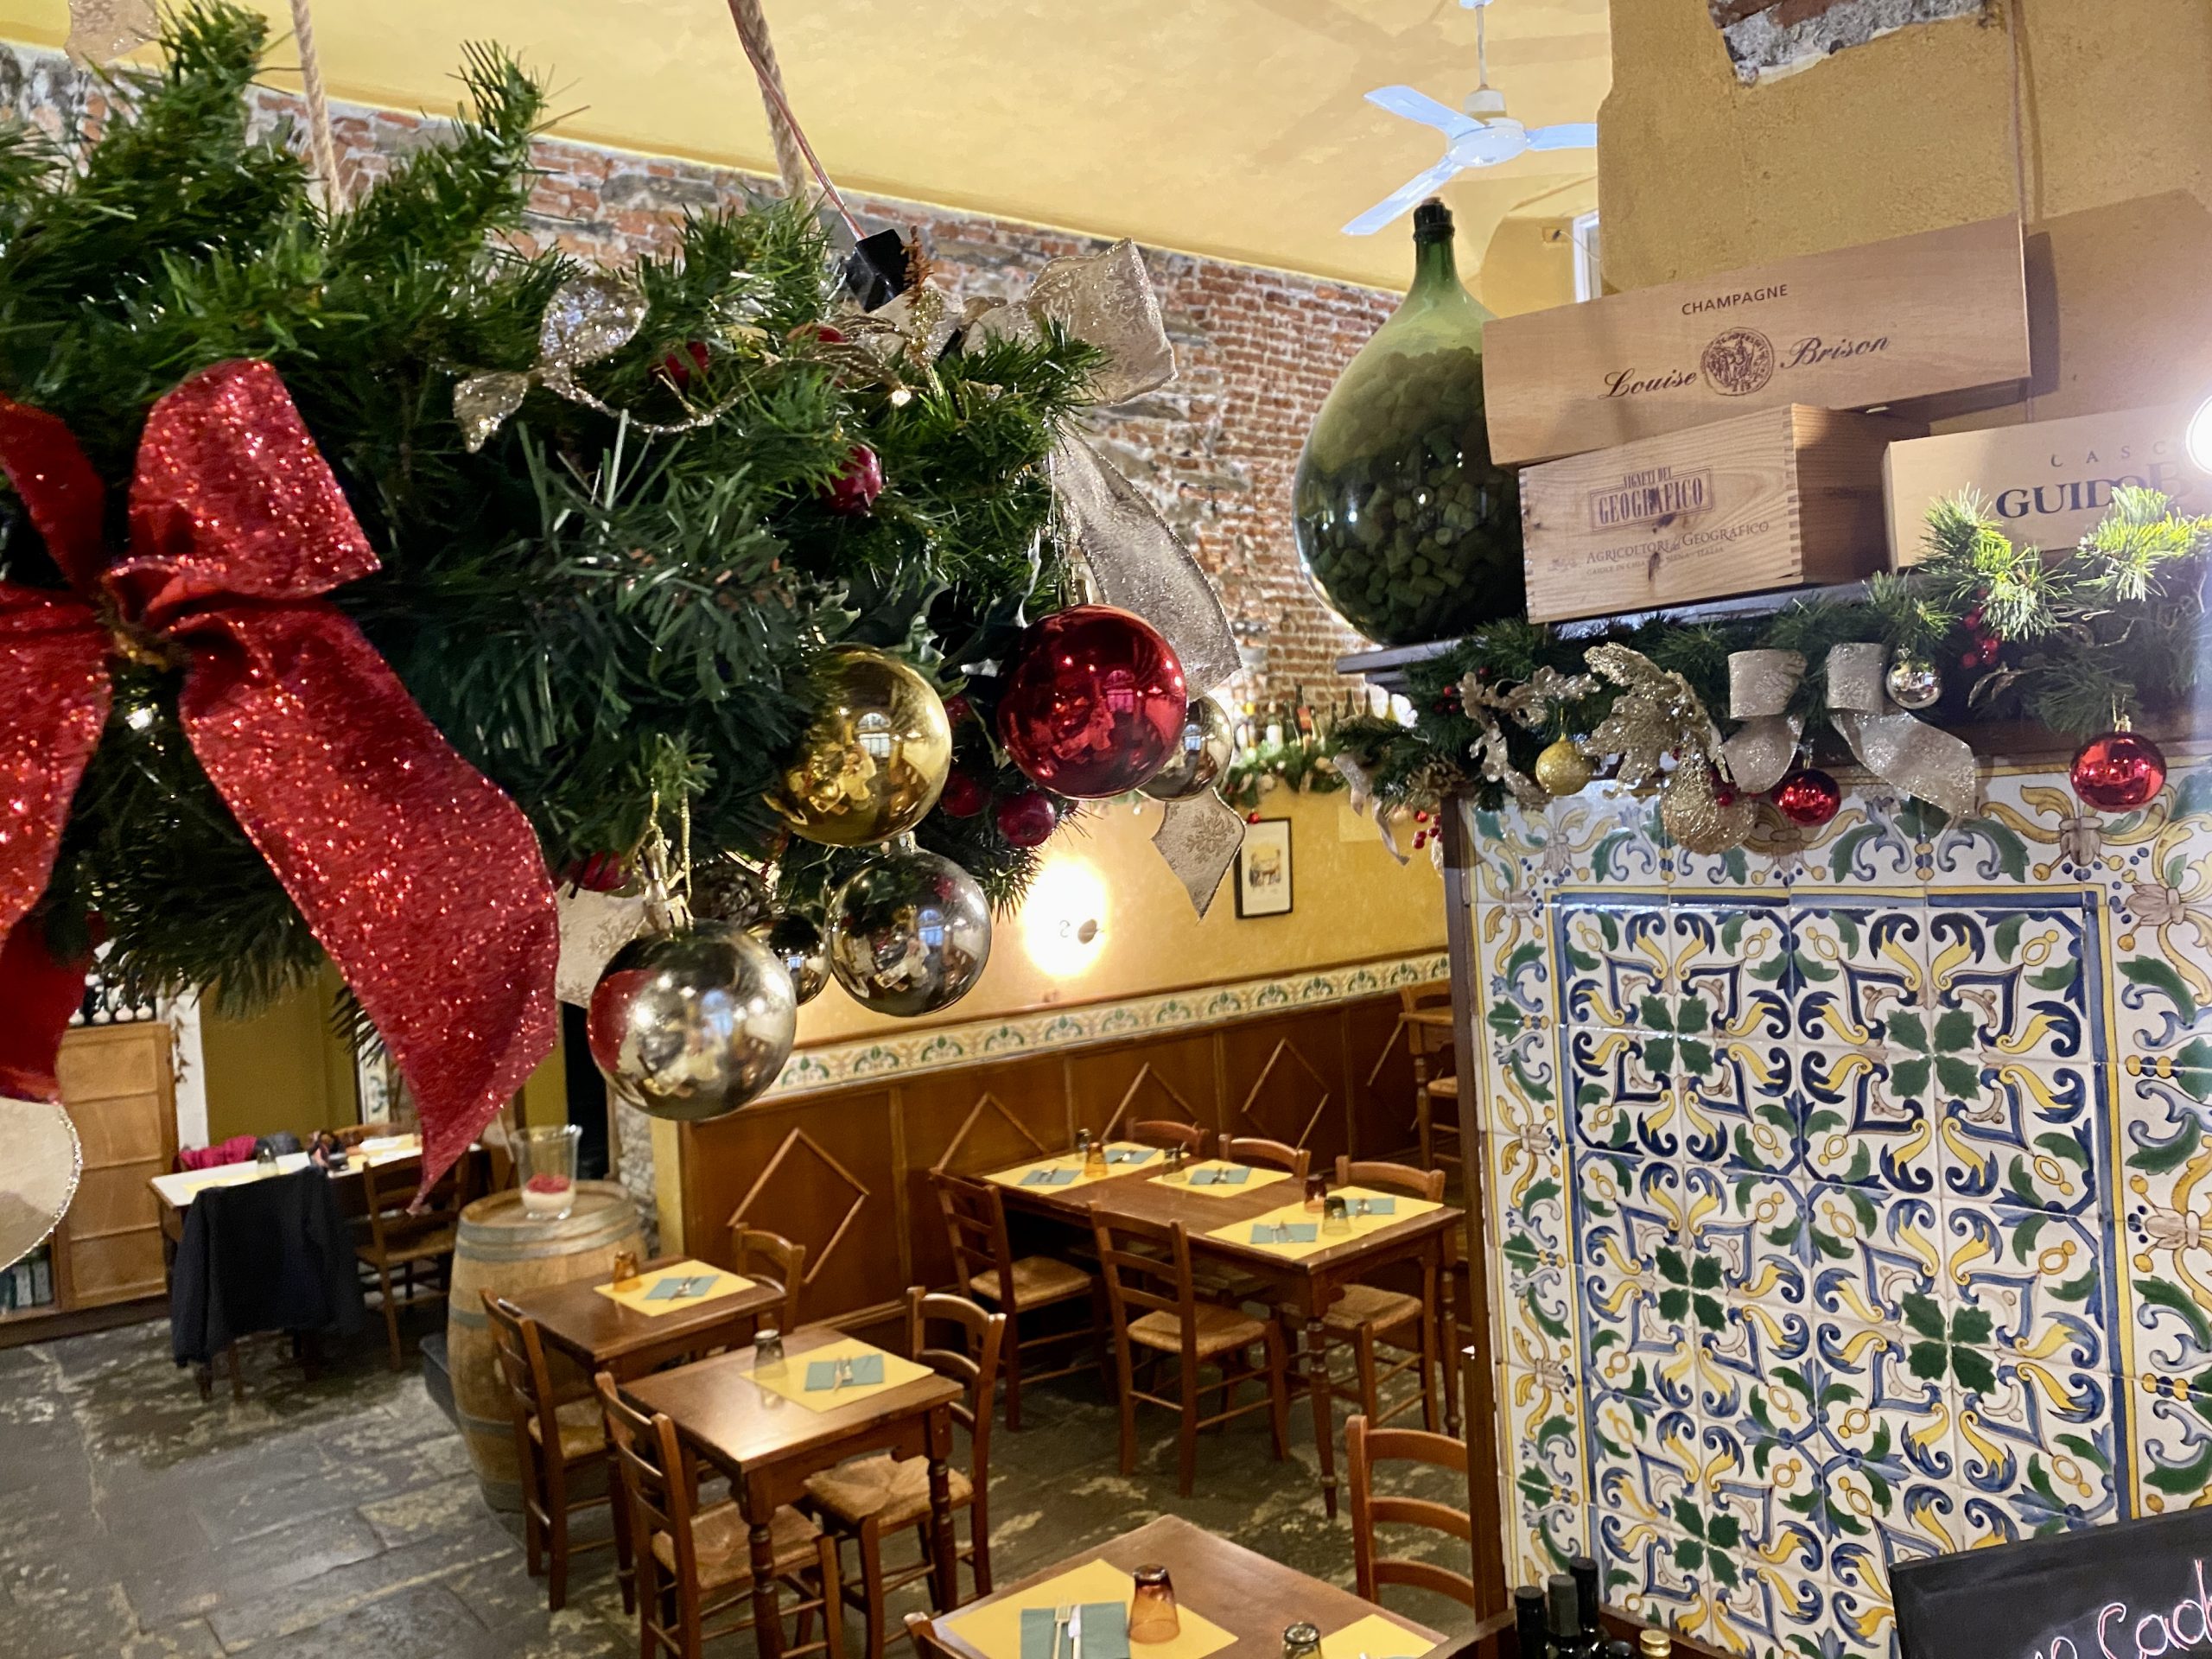 Cena della Vigilia e Pranzo di Natale 2021 al Ristorante Osteria il Cadraio, nel centro di Genova